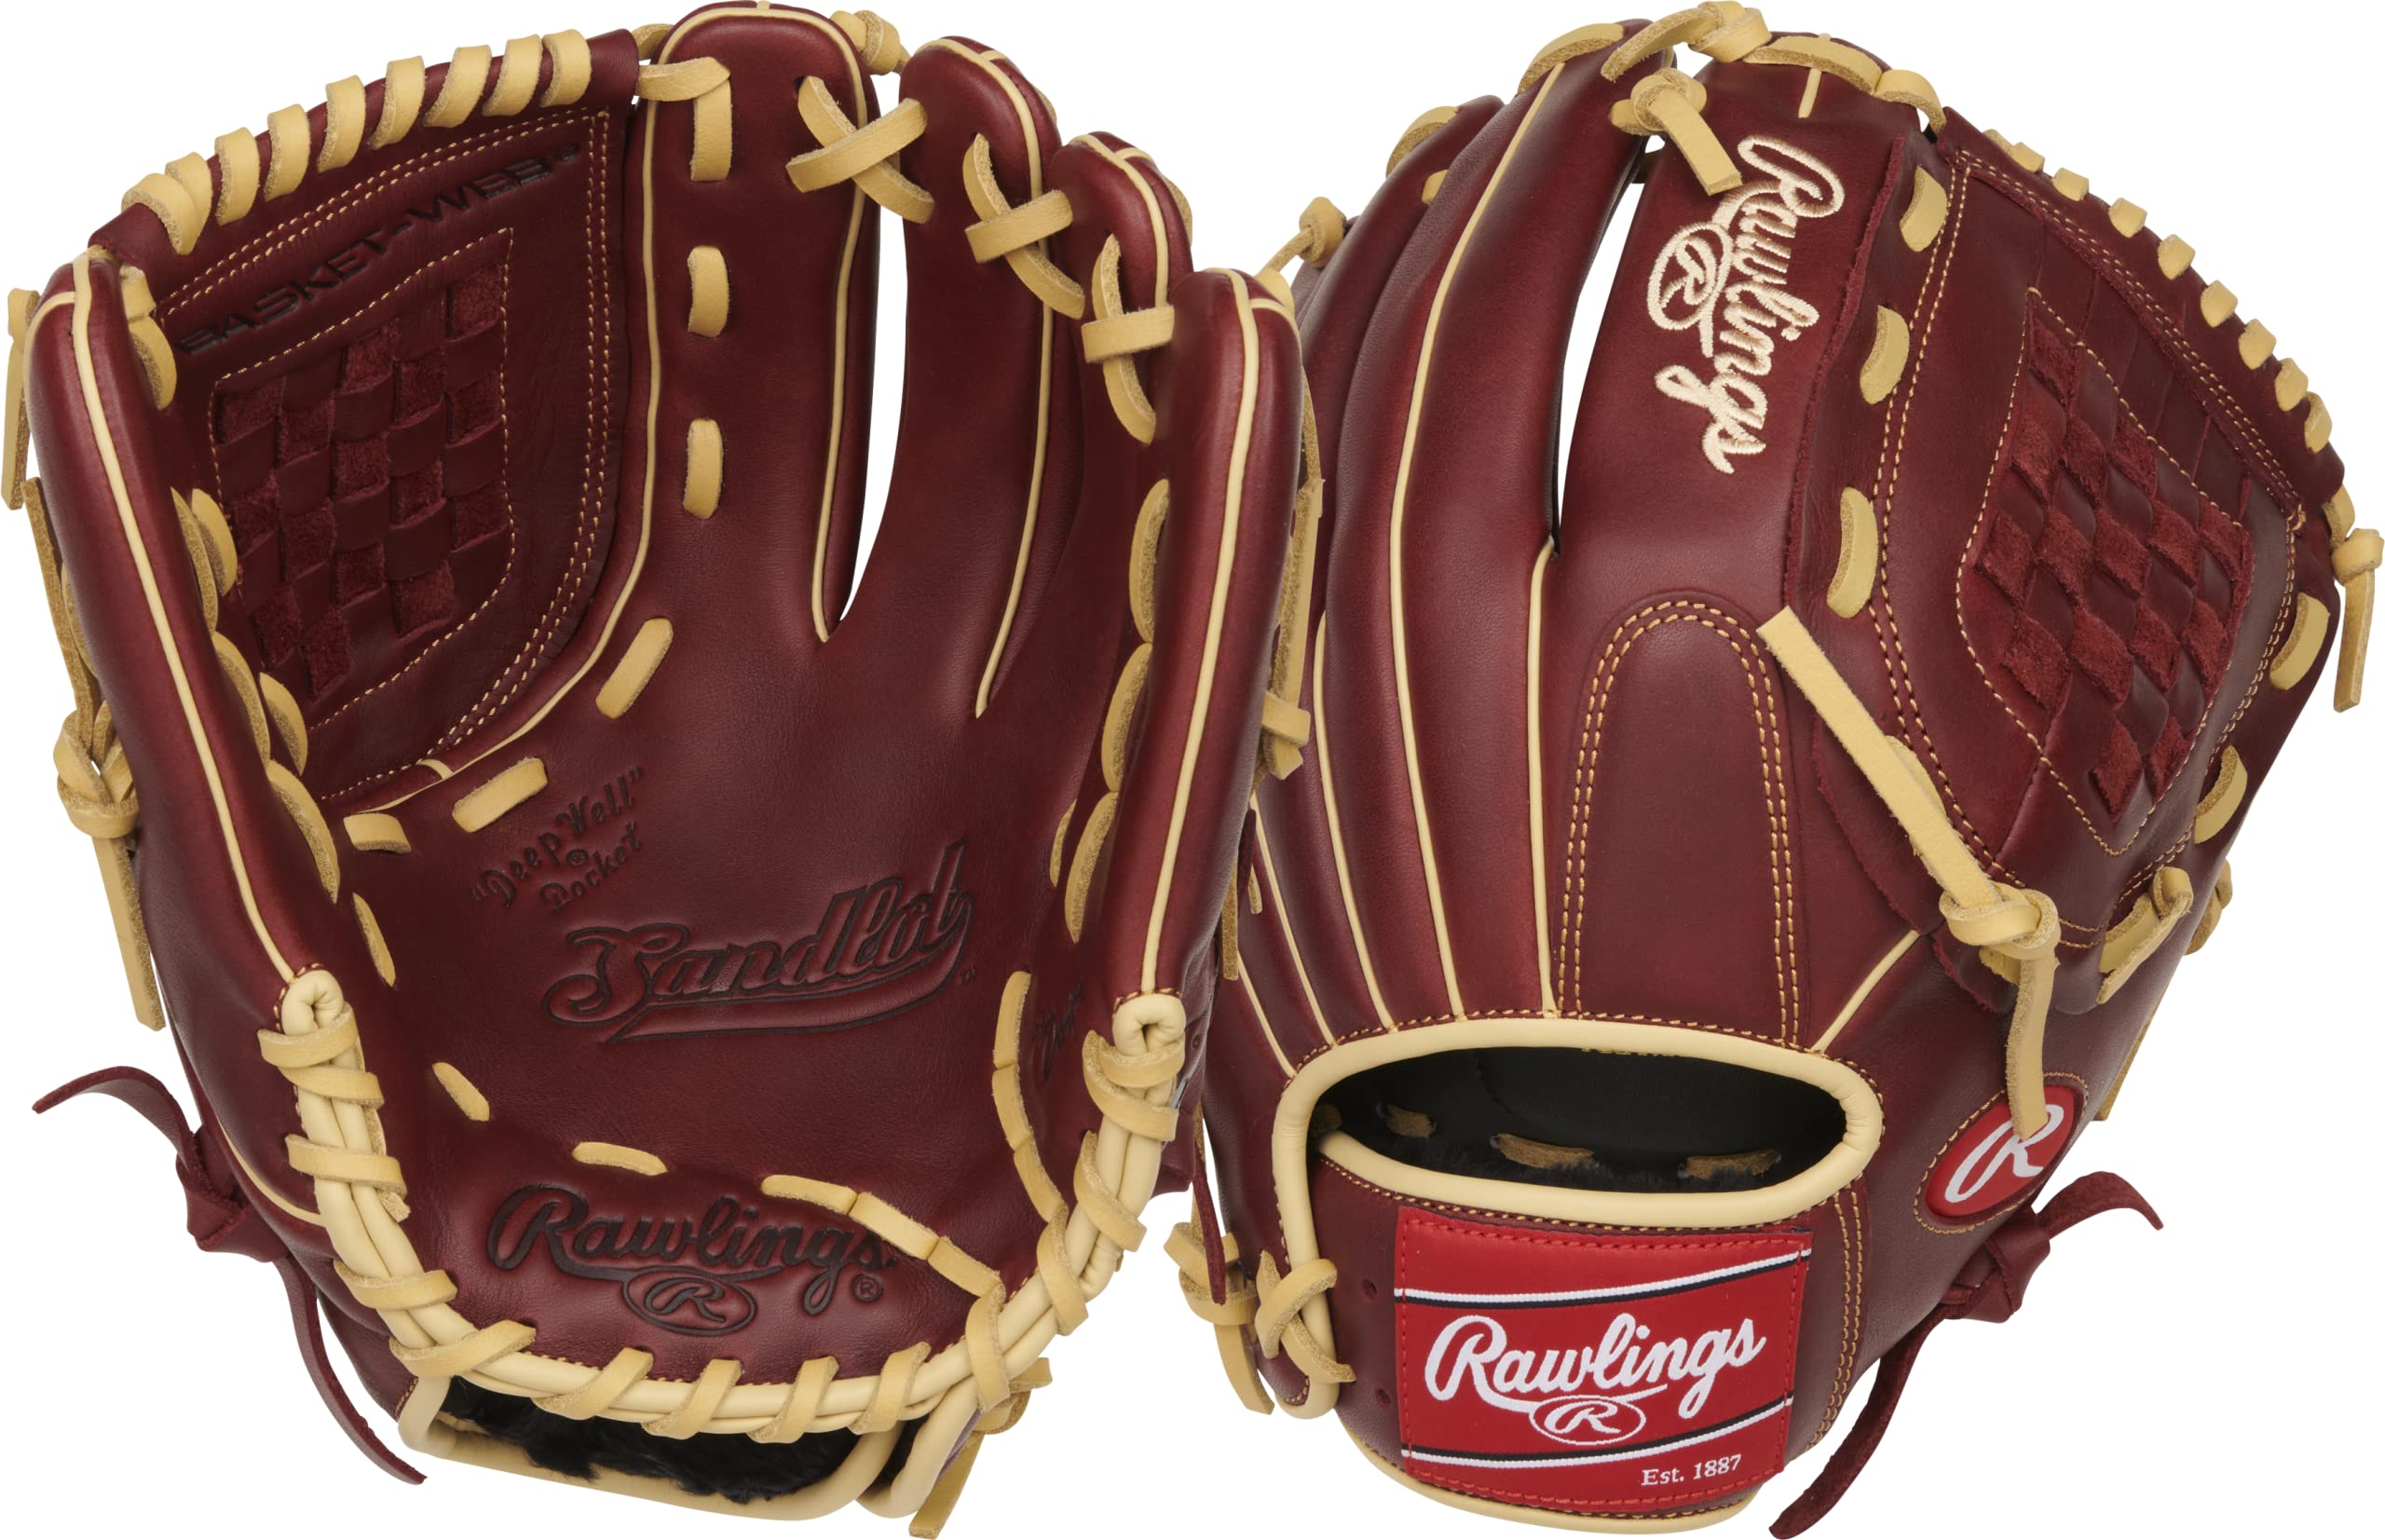 Rawlings Sandlot Series Baseball-Handschuh aus Leder, 30,5 cm, für Linkshänder